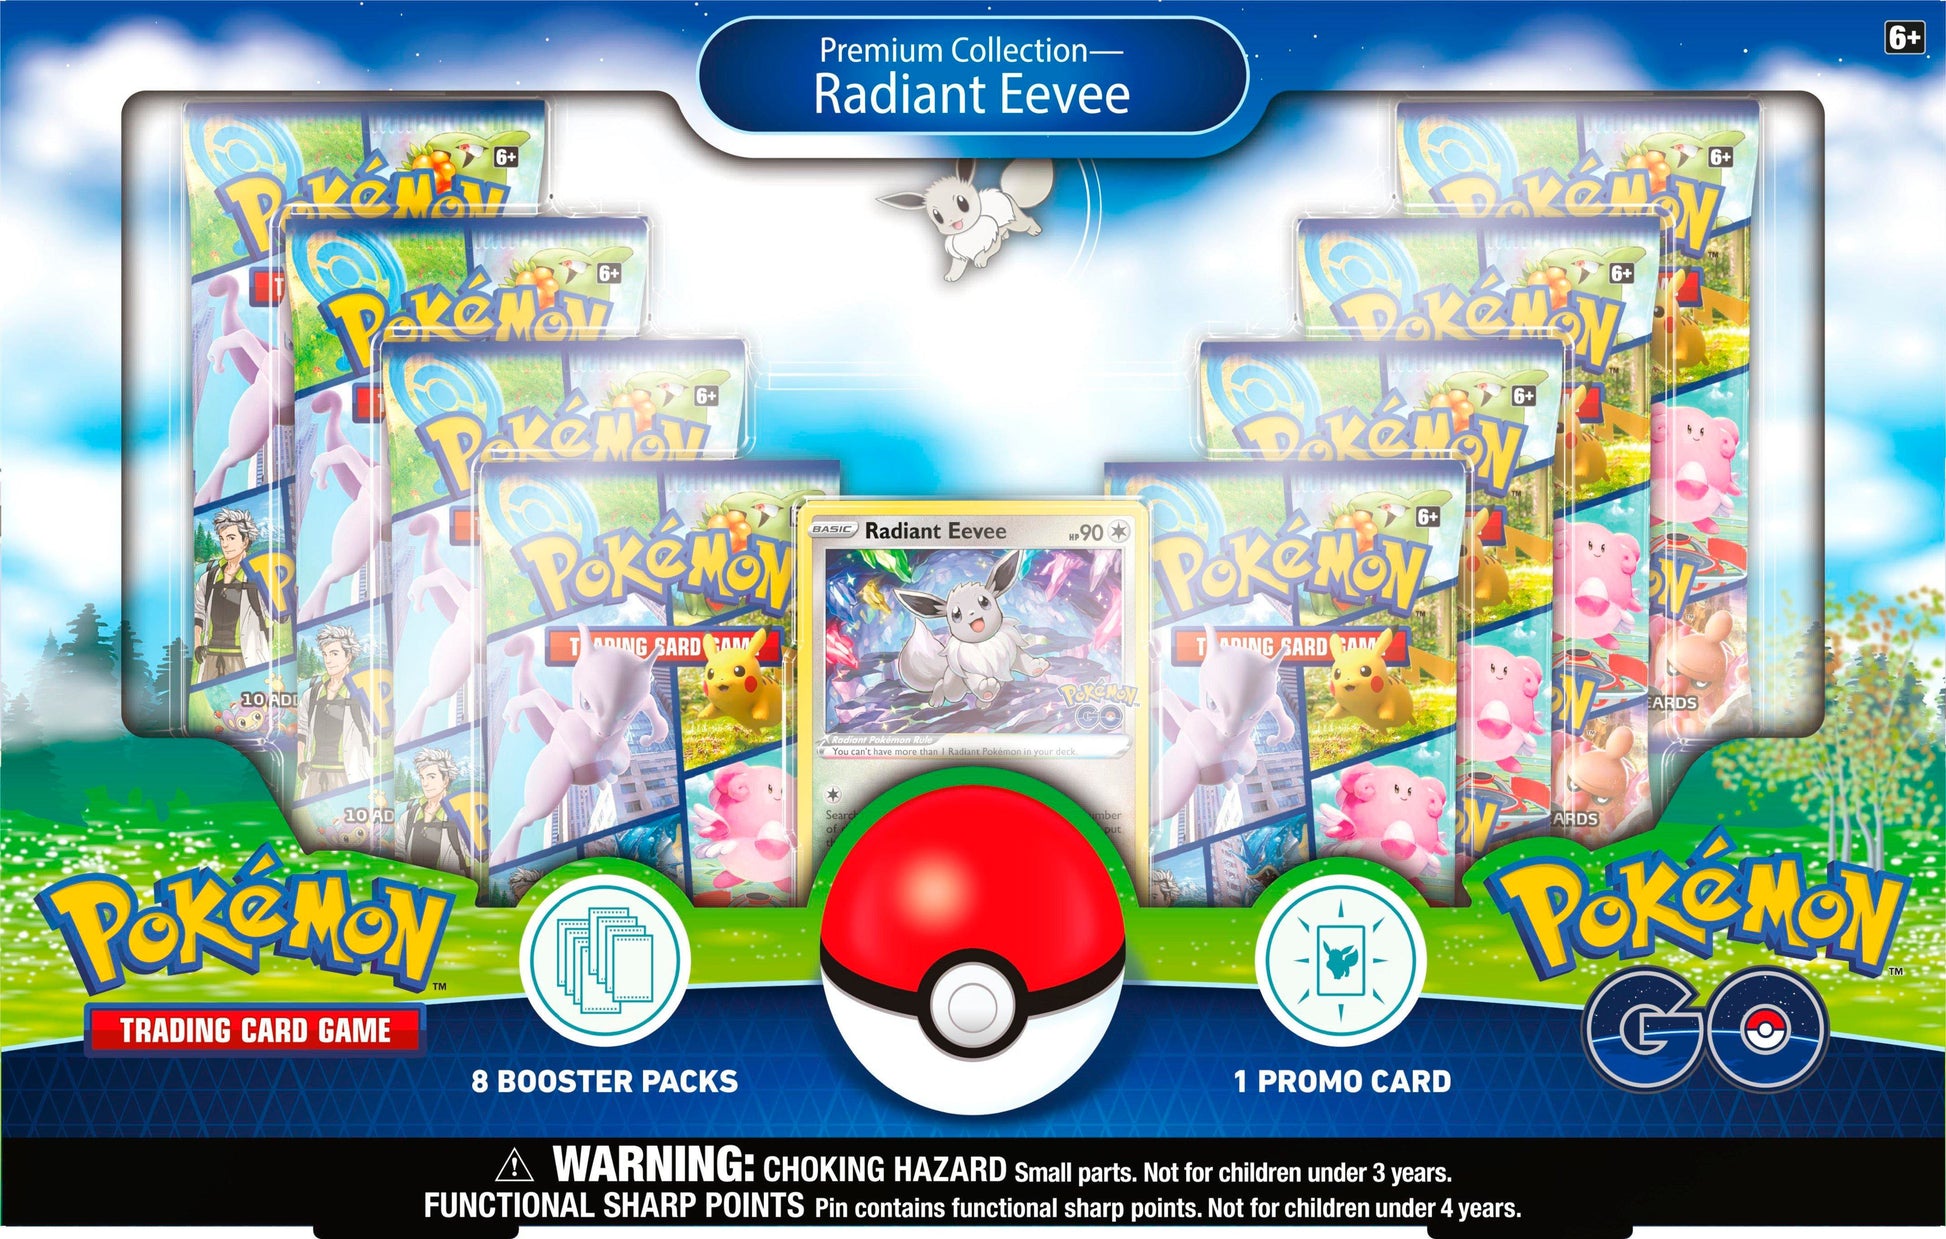 Pokemon Go: Premium Collection Radiant Eevee Box - Premier Trading Cards